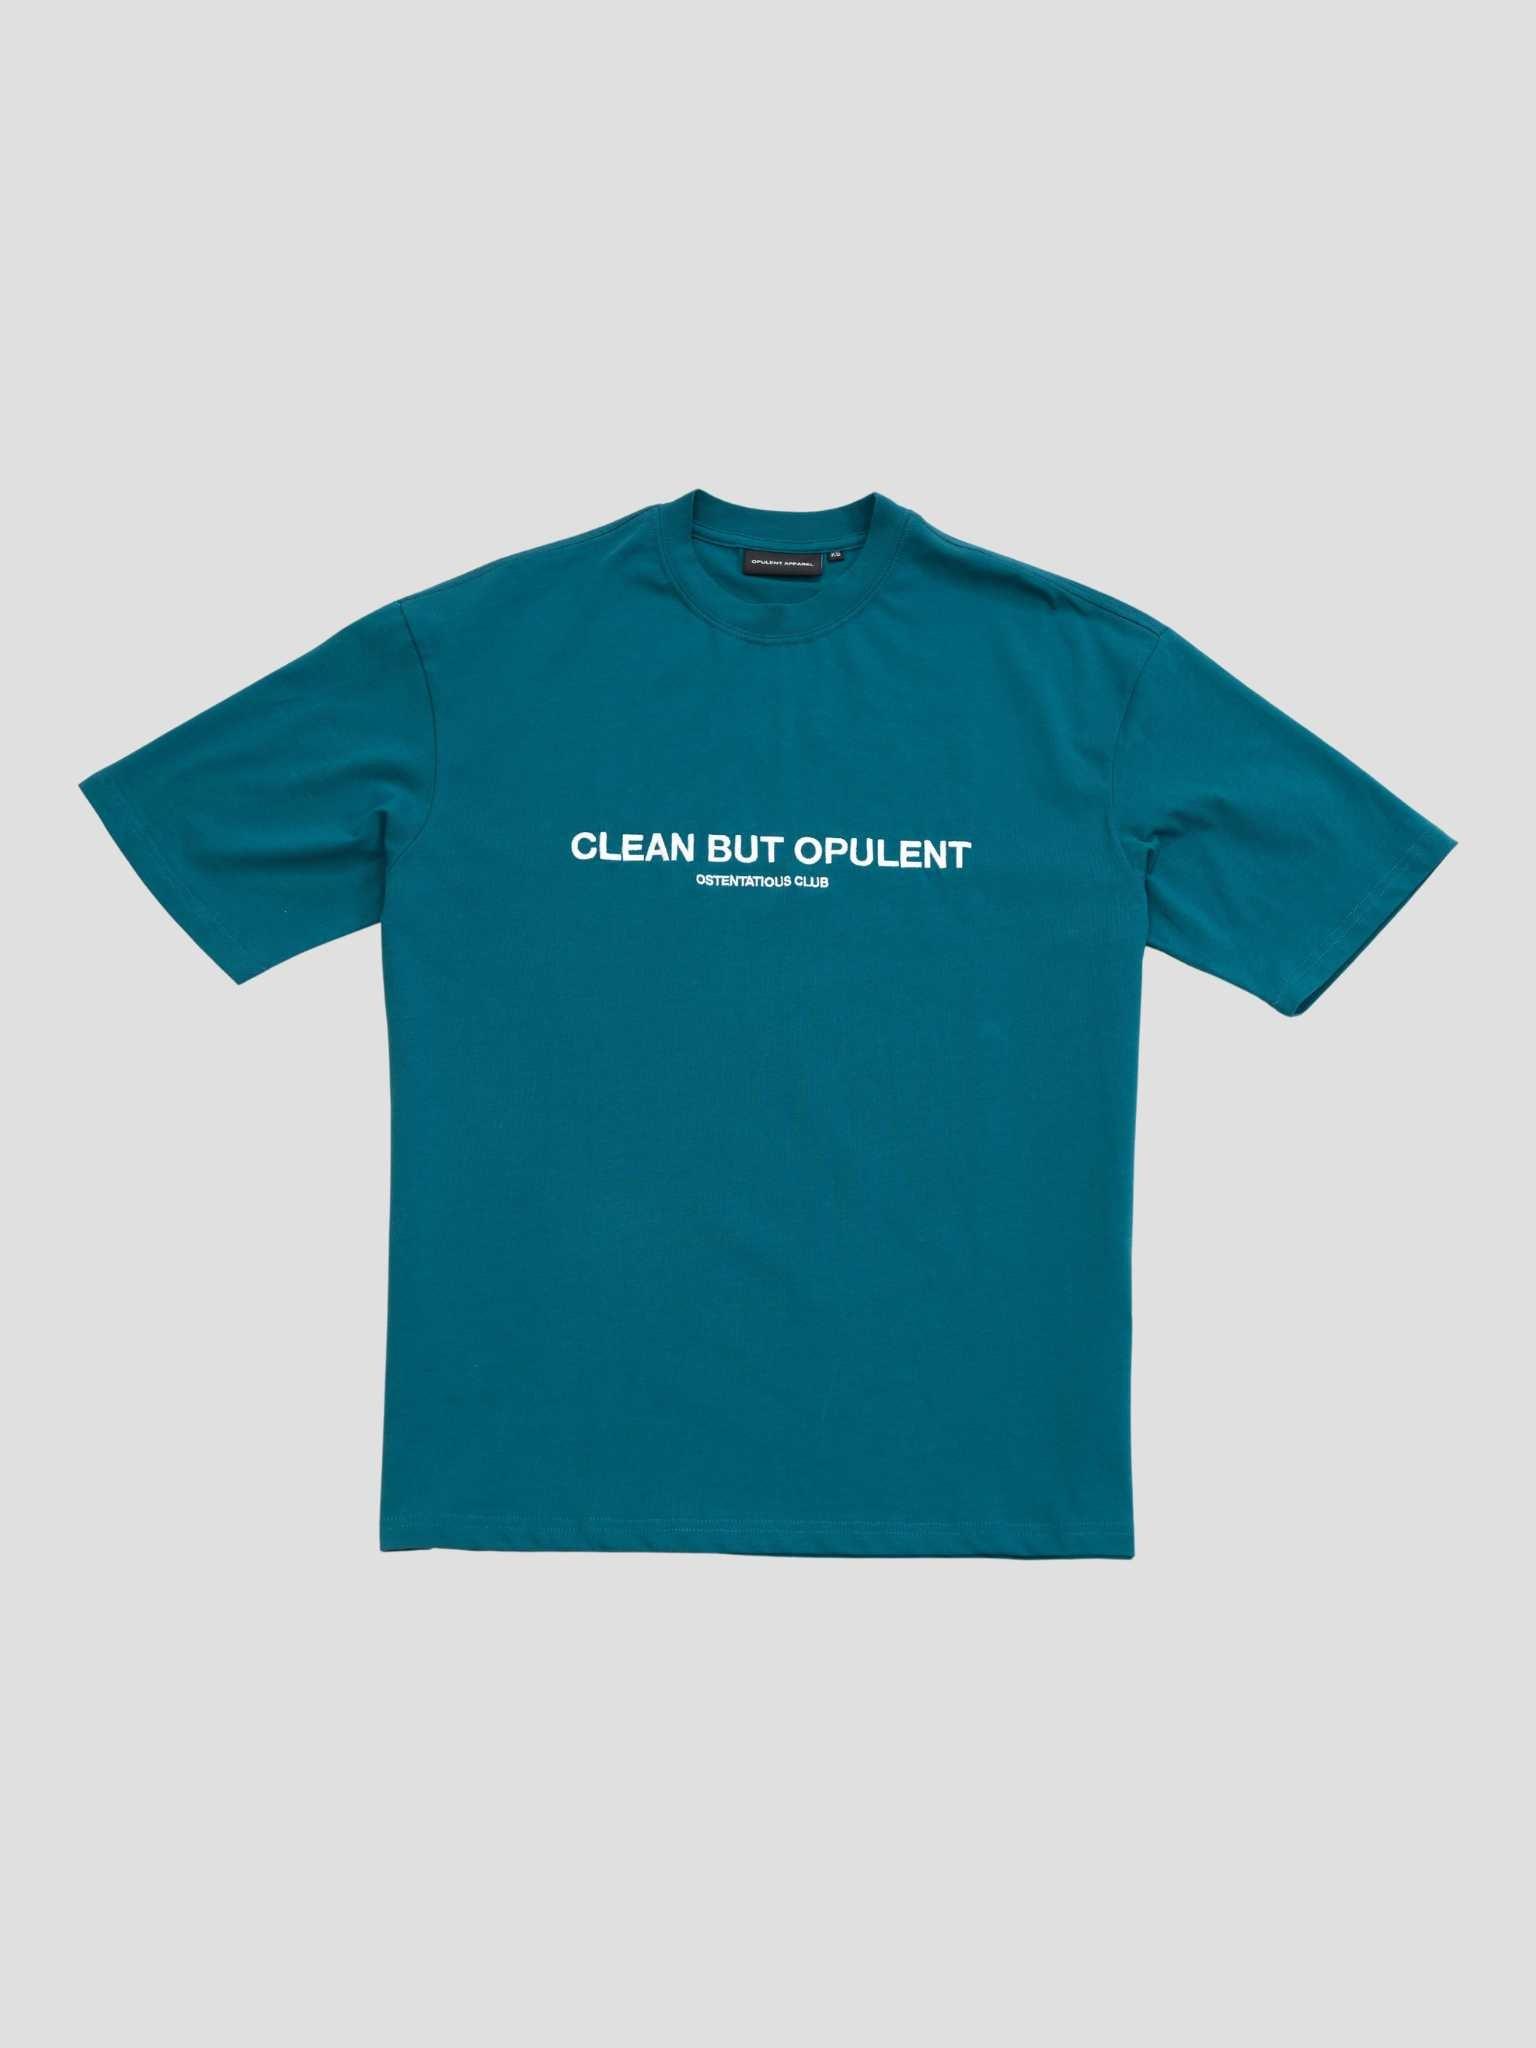 CBO Signature T-Shirt - Teal Opulent Apparel